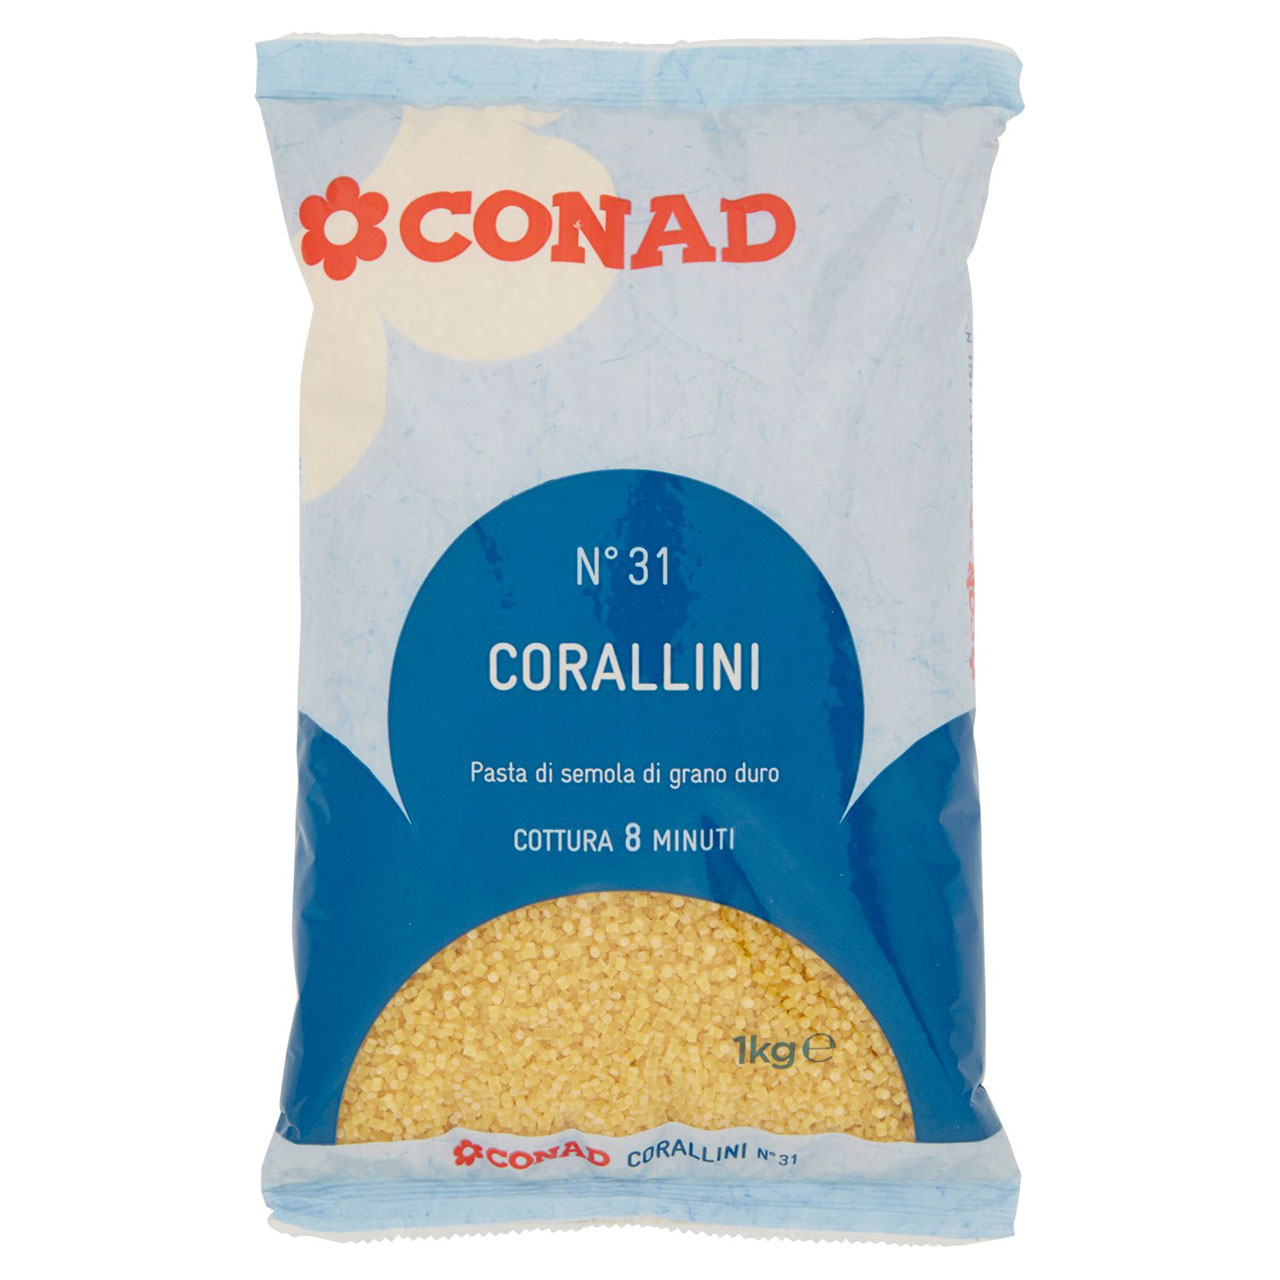 Corallini 1 kg Conad in vendita online